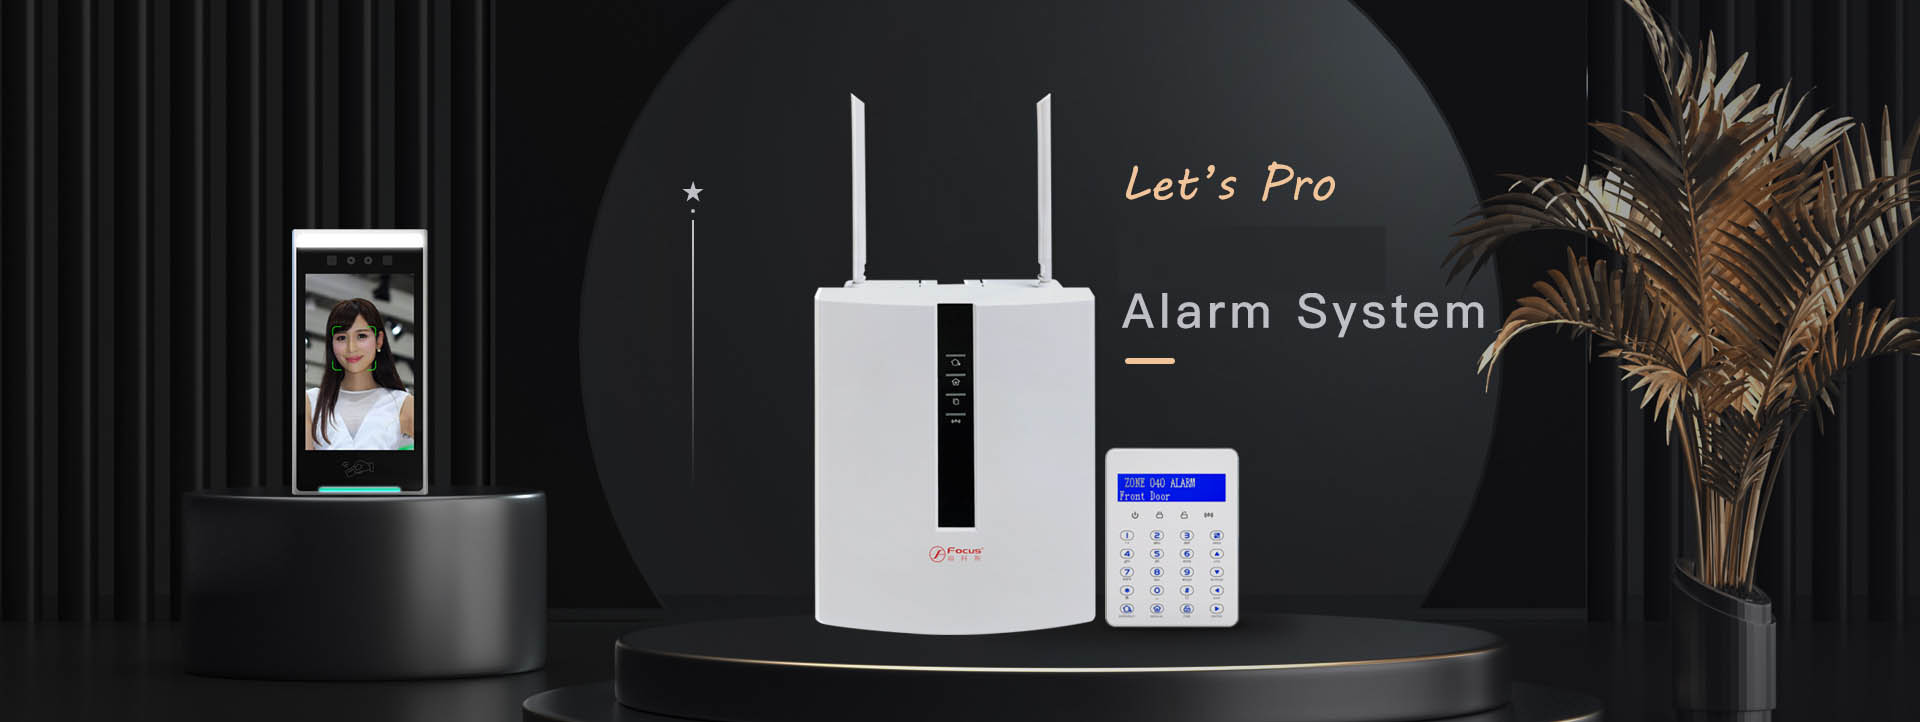 Focus FC-7688Plus Security Alarm System